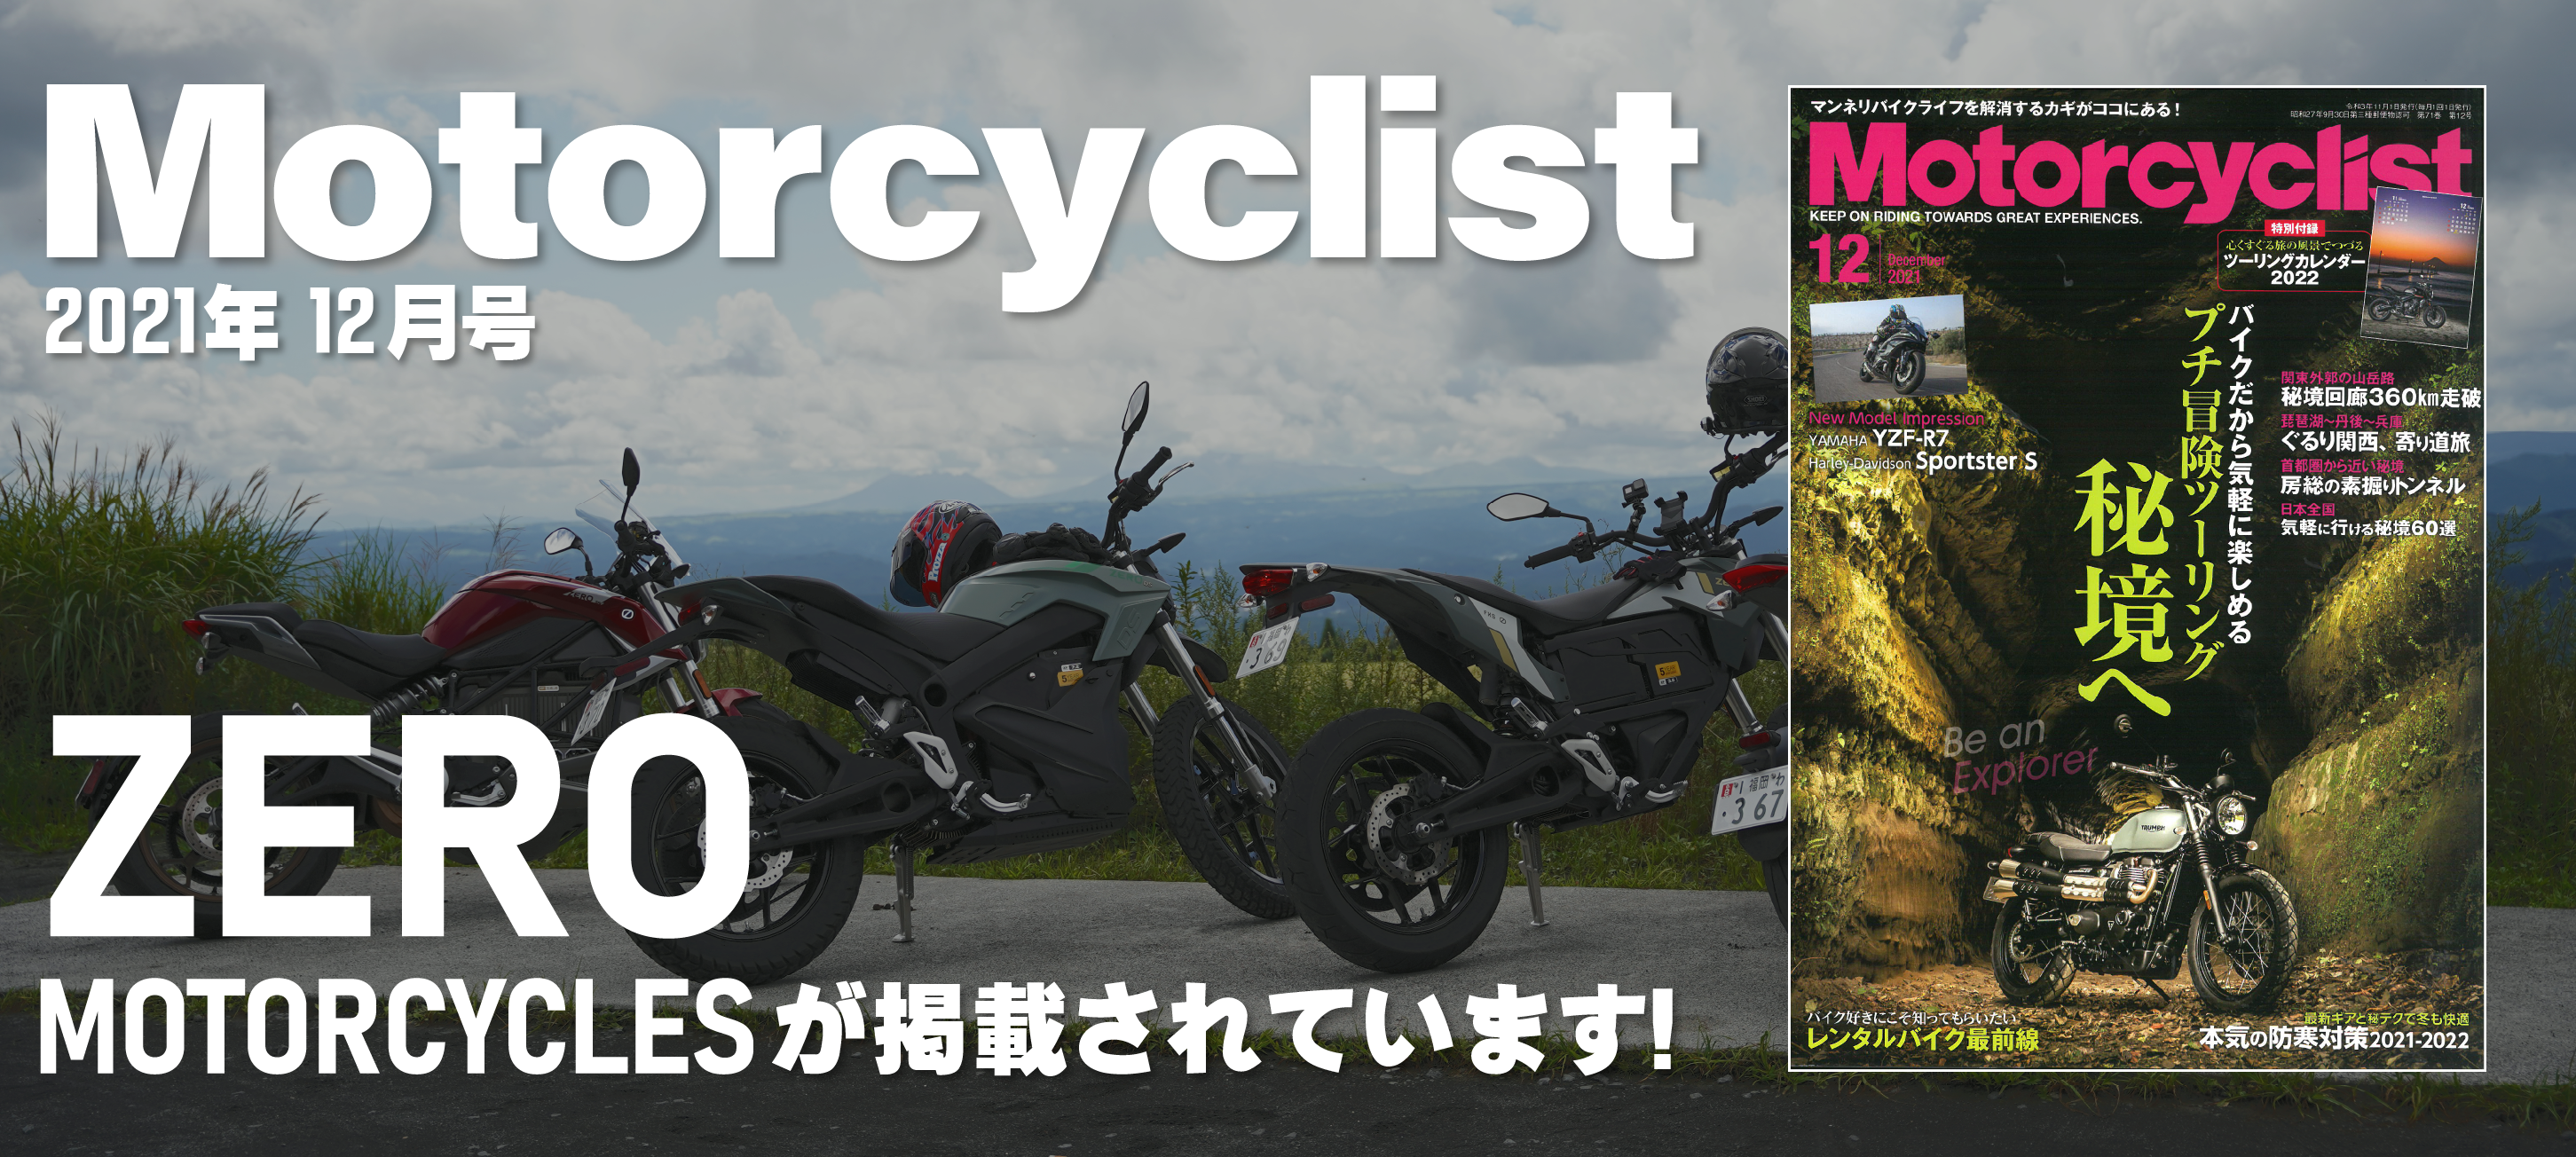 モーターサイクリスト2021年12月号にZero電動バイクが掲載されています